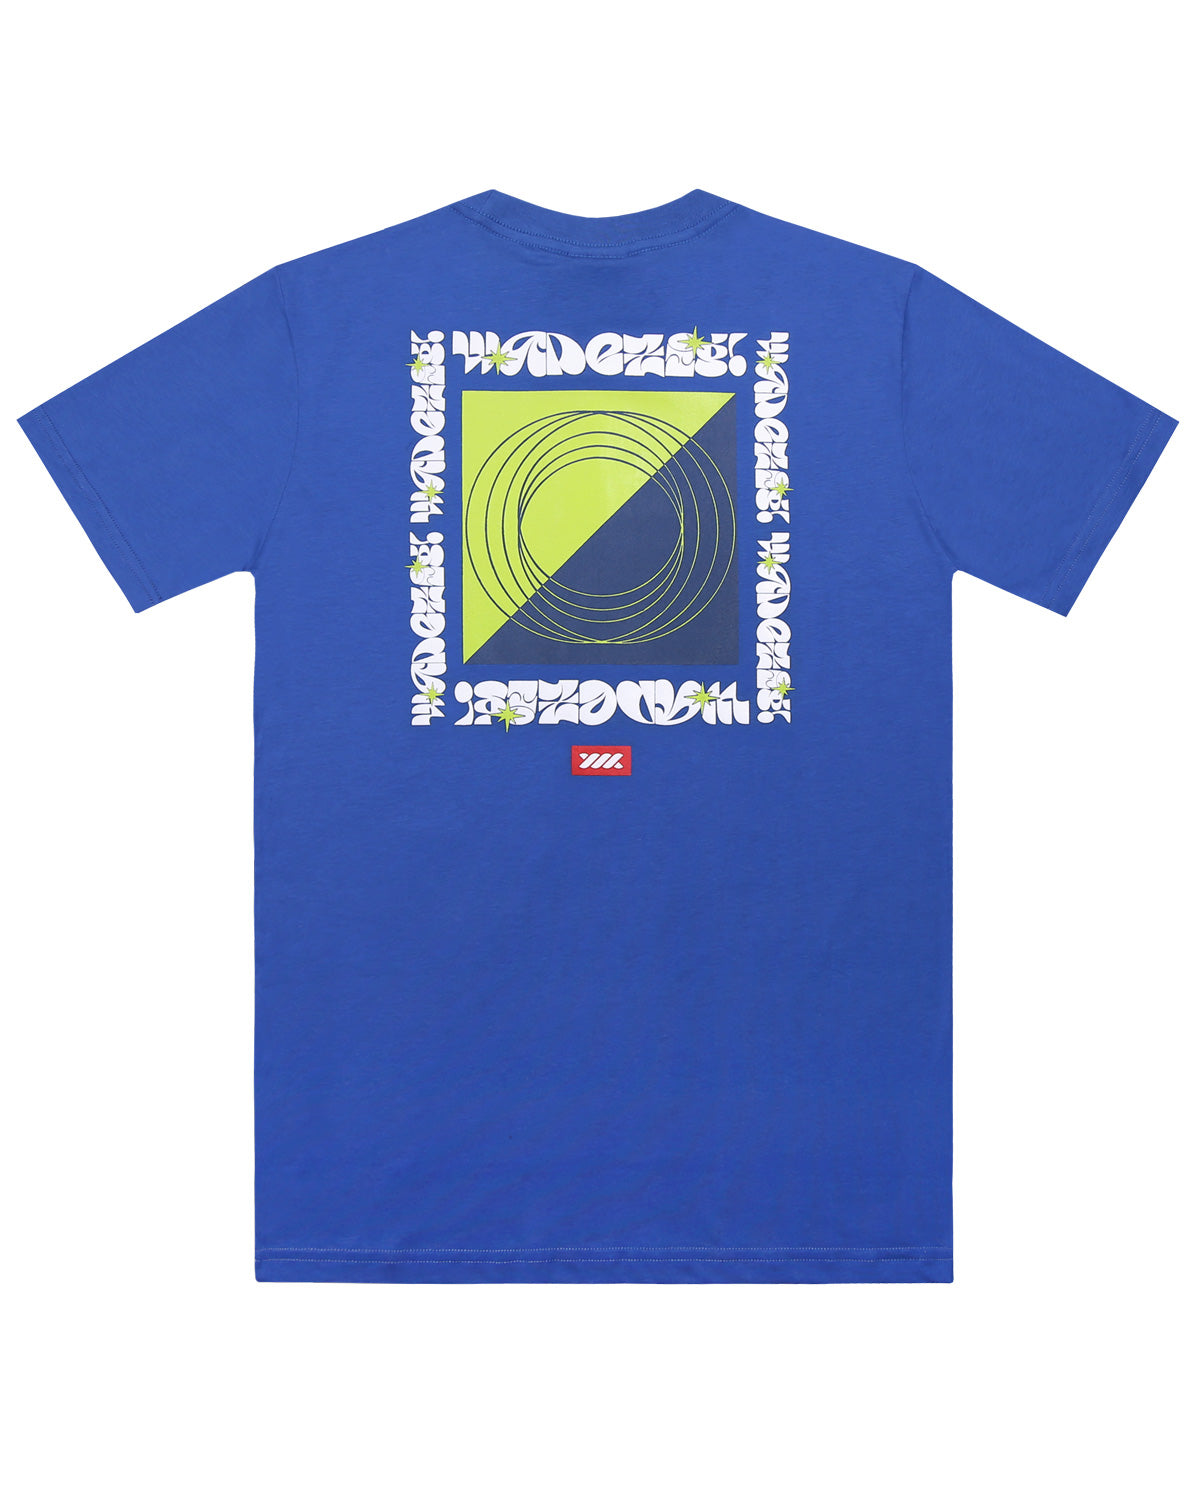 Wadezig! T-Shirt - Equality Blue